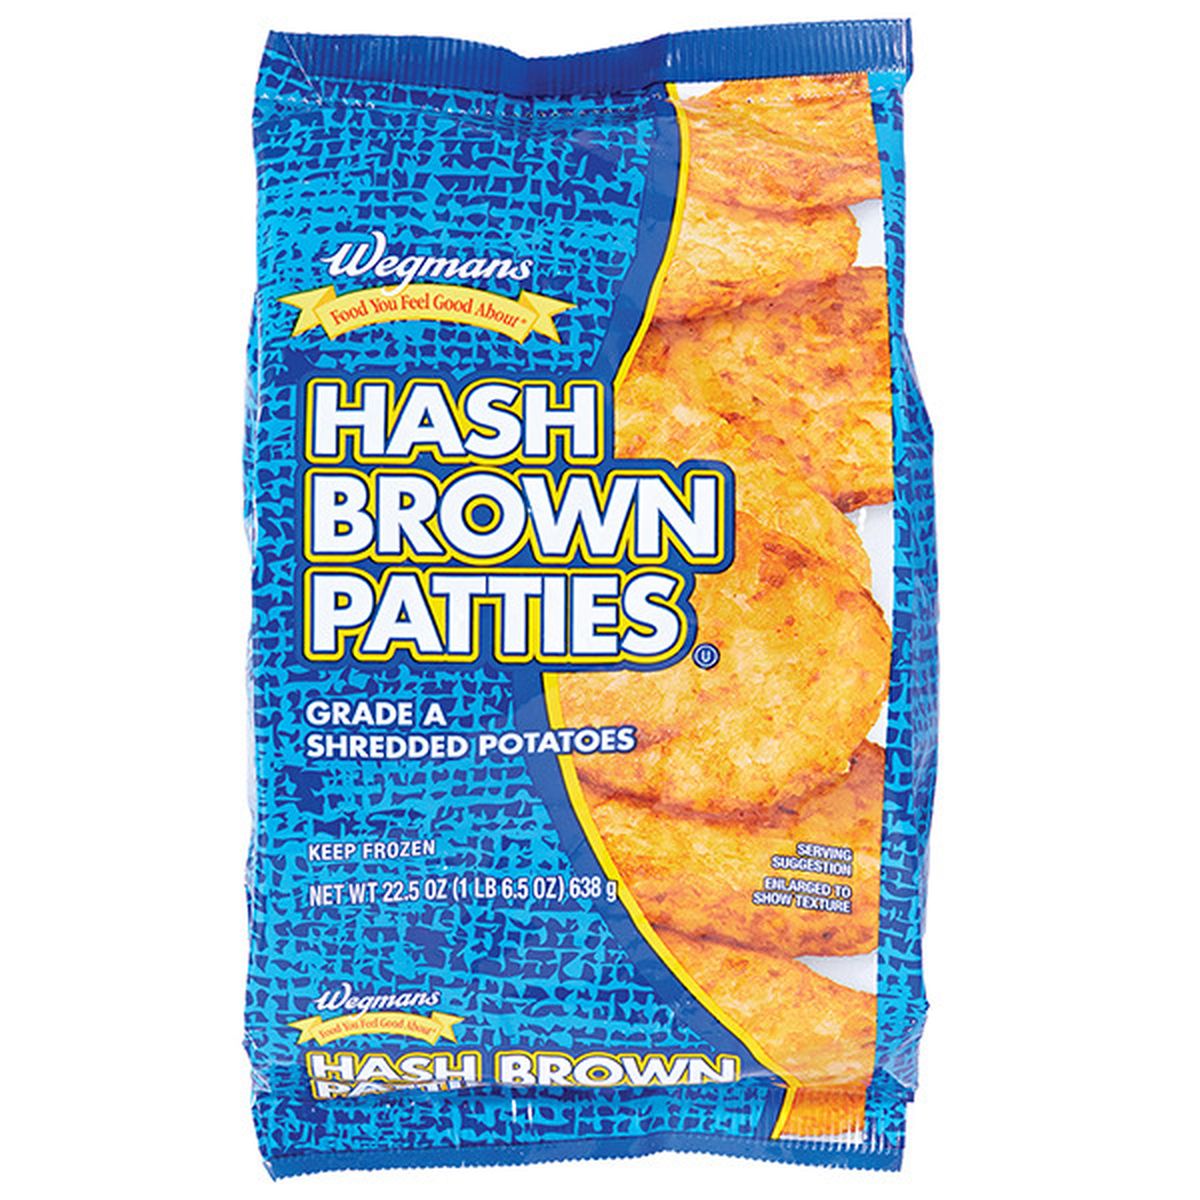 Calories in Wegmans Hash Brown Patties